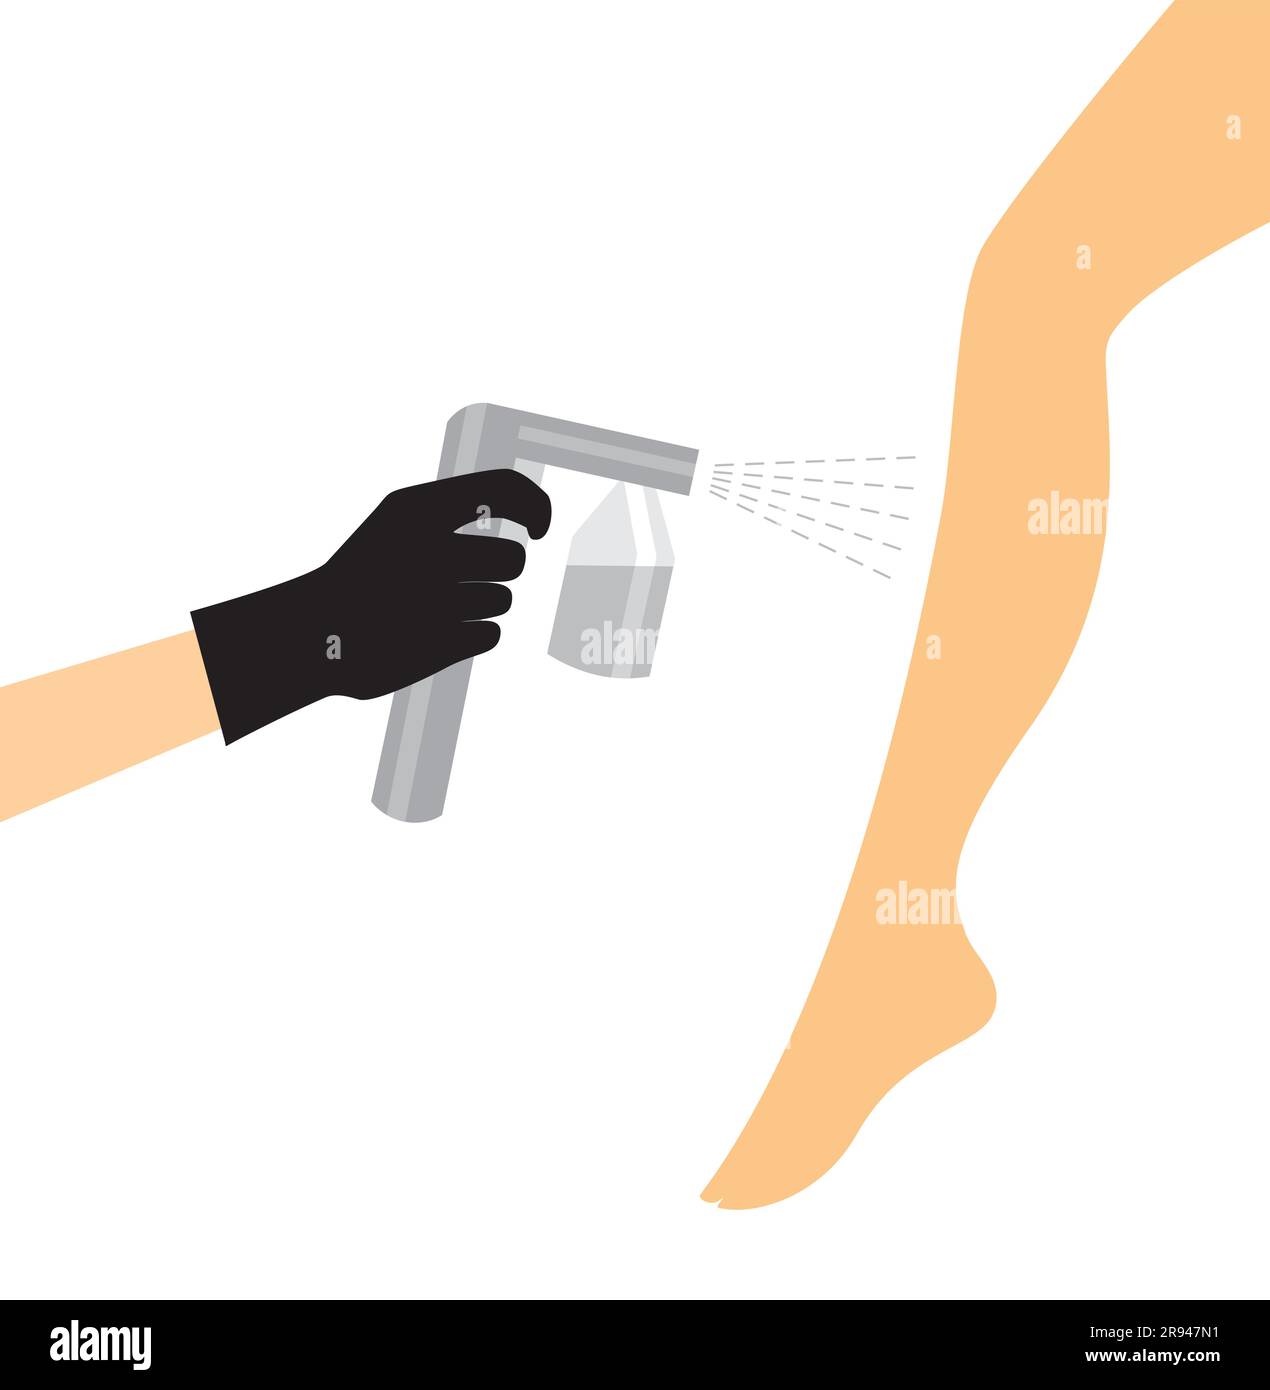 Main dans un gant noir avec une machine de bronzage spray grise vaporise le bronzage sur la jambe d'une femme. Illustration vectorielle de la procédure de bronzage automatique Illustration de Vecteur